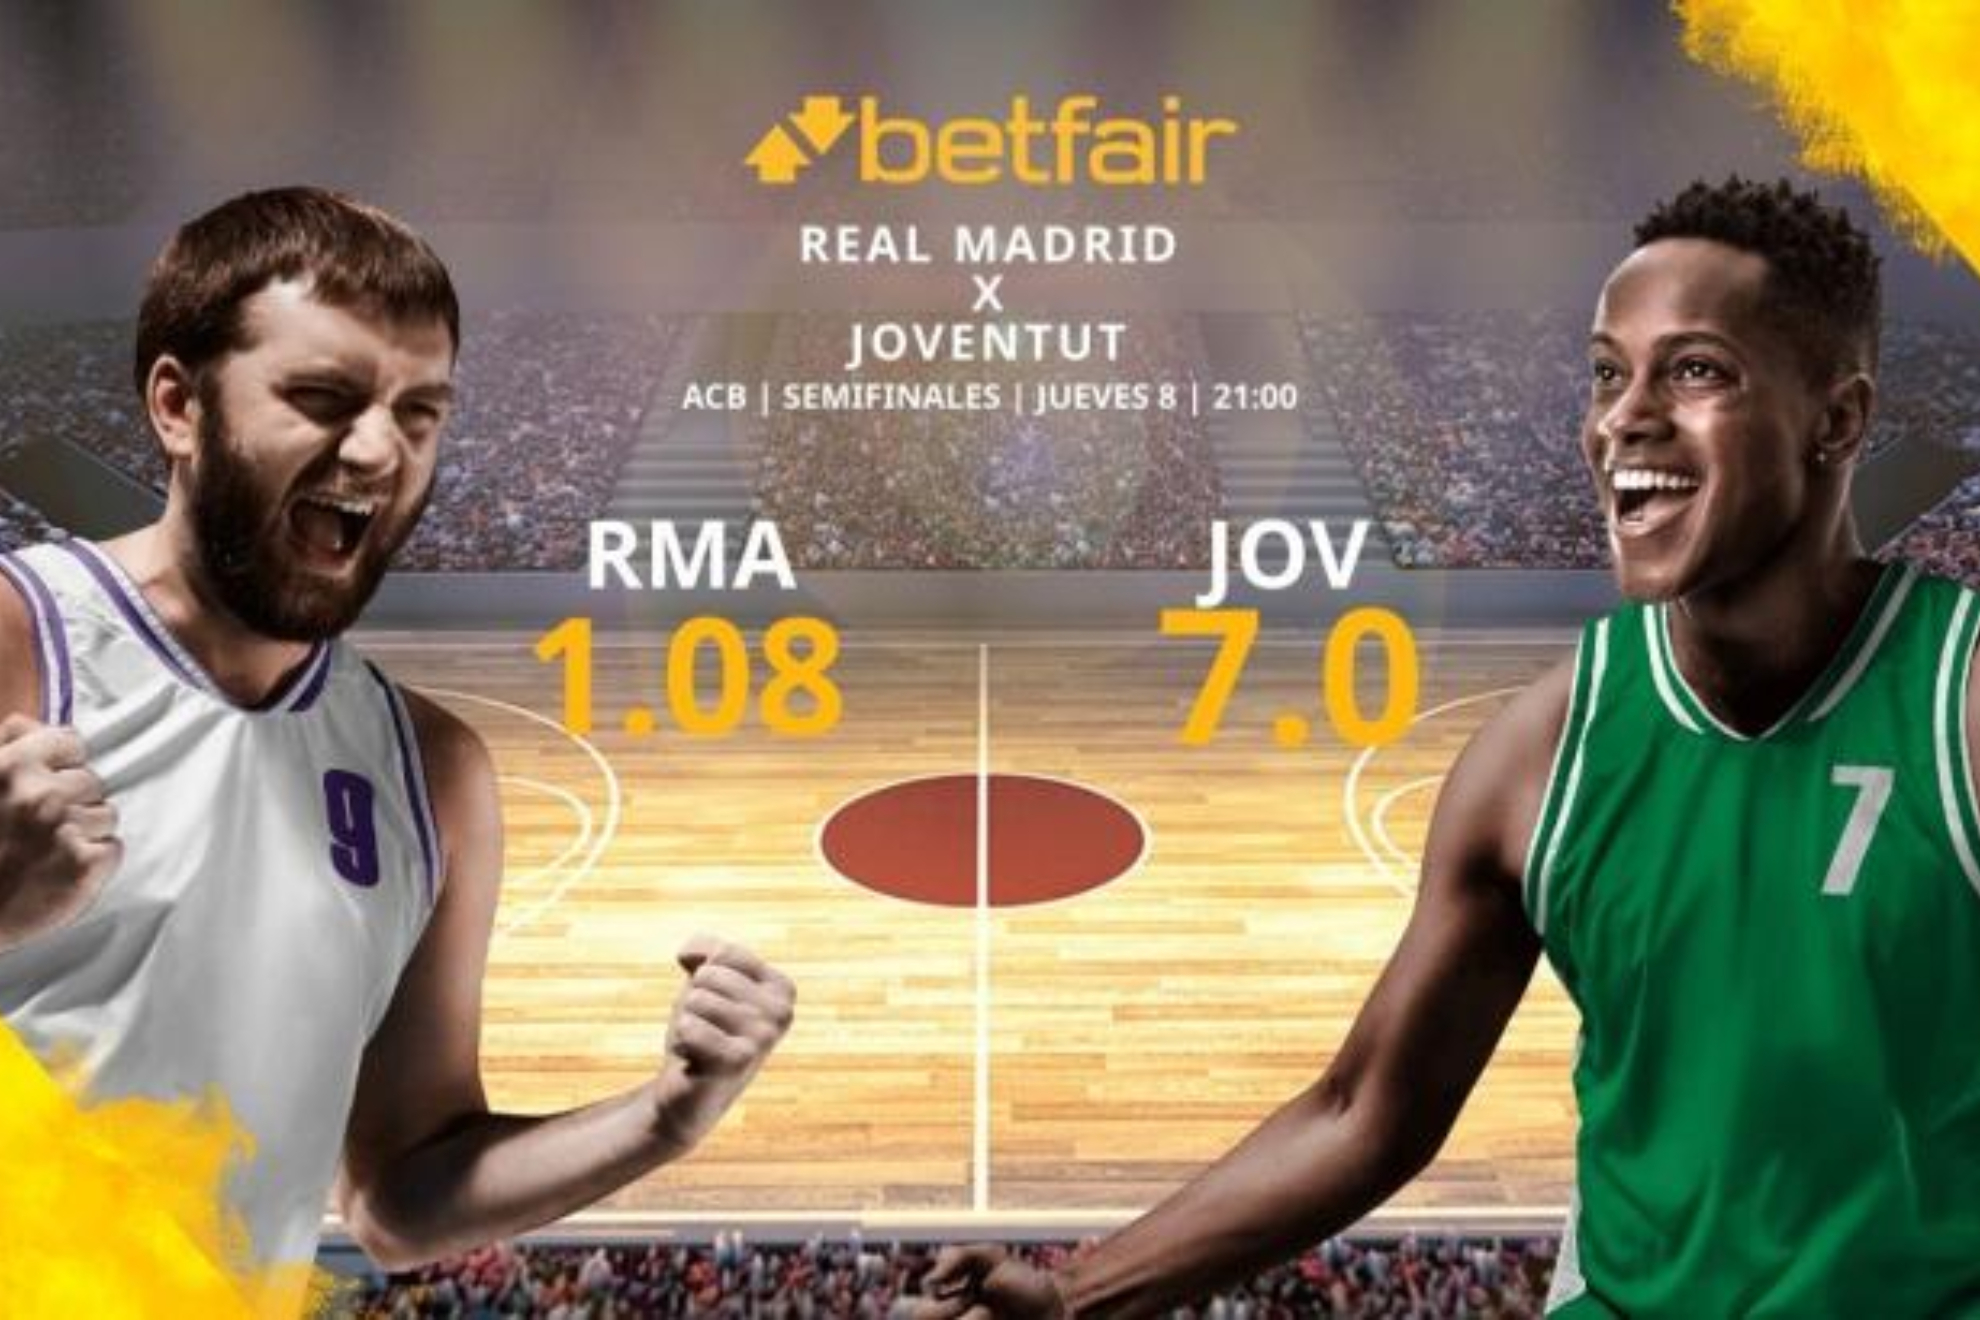 Real Madrid vs Joventut Badalona: estadsticas y pronsticos